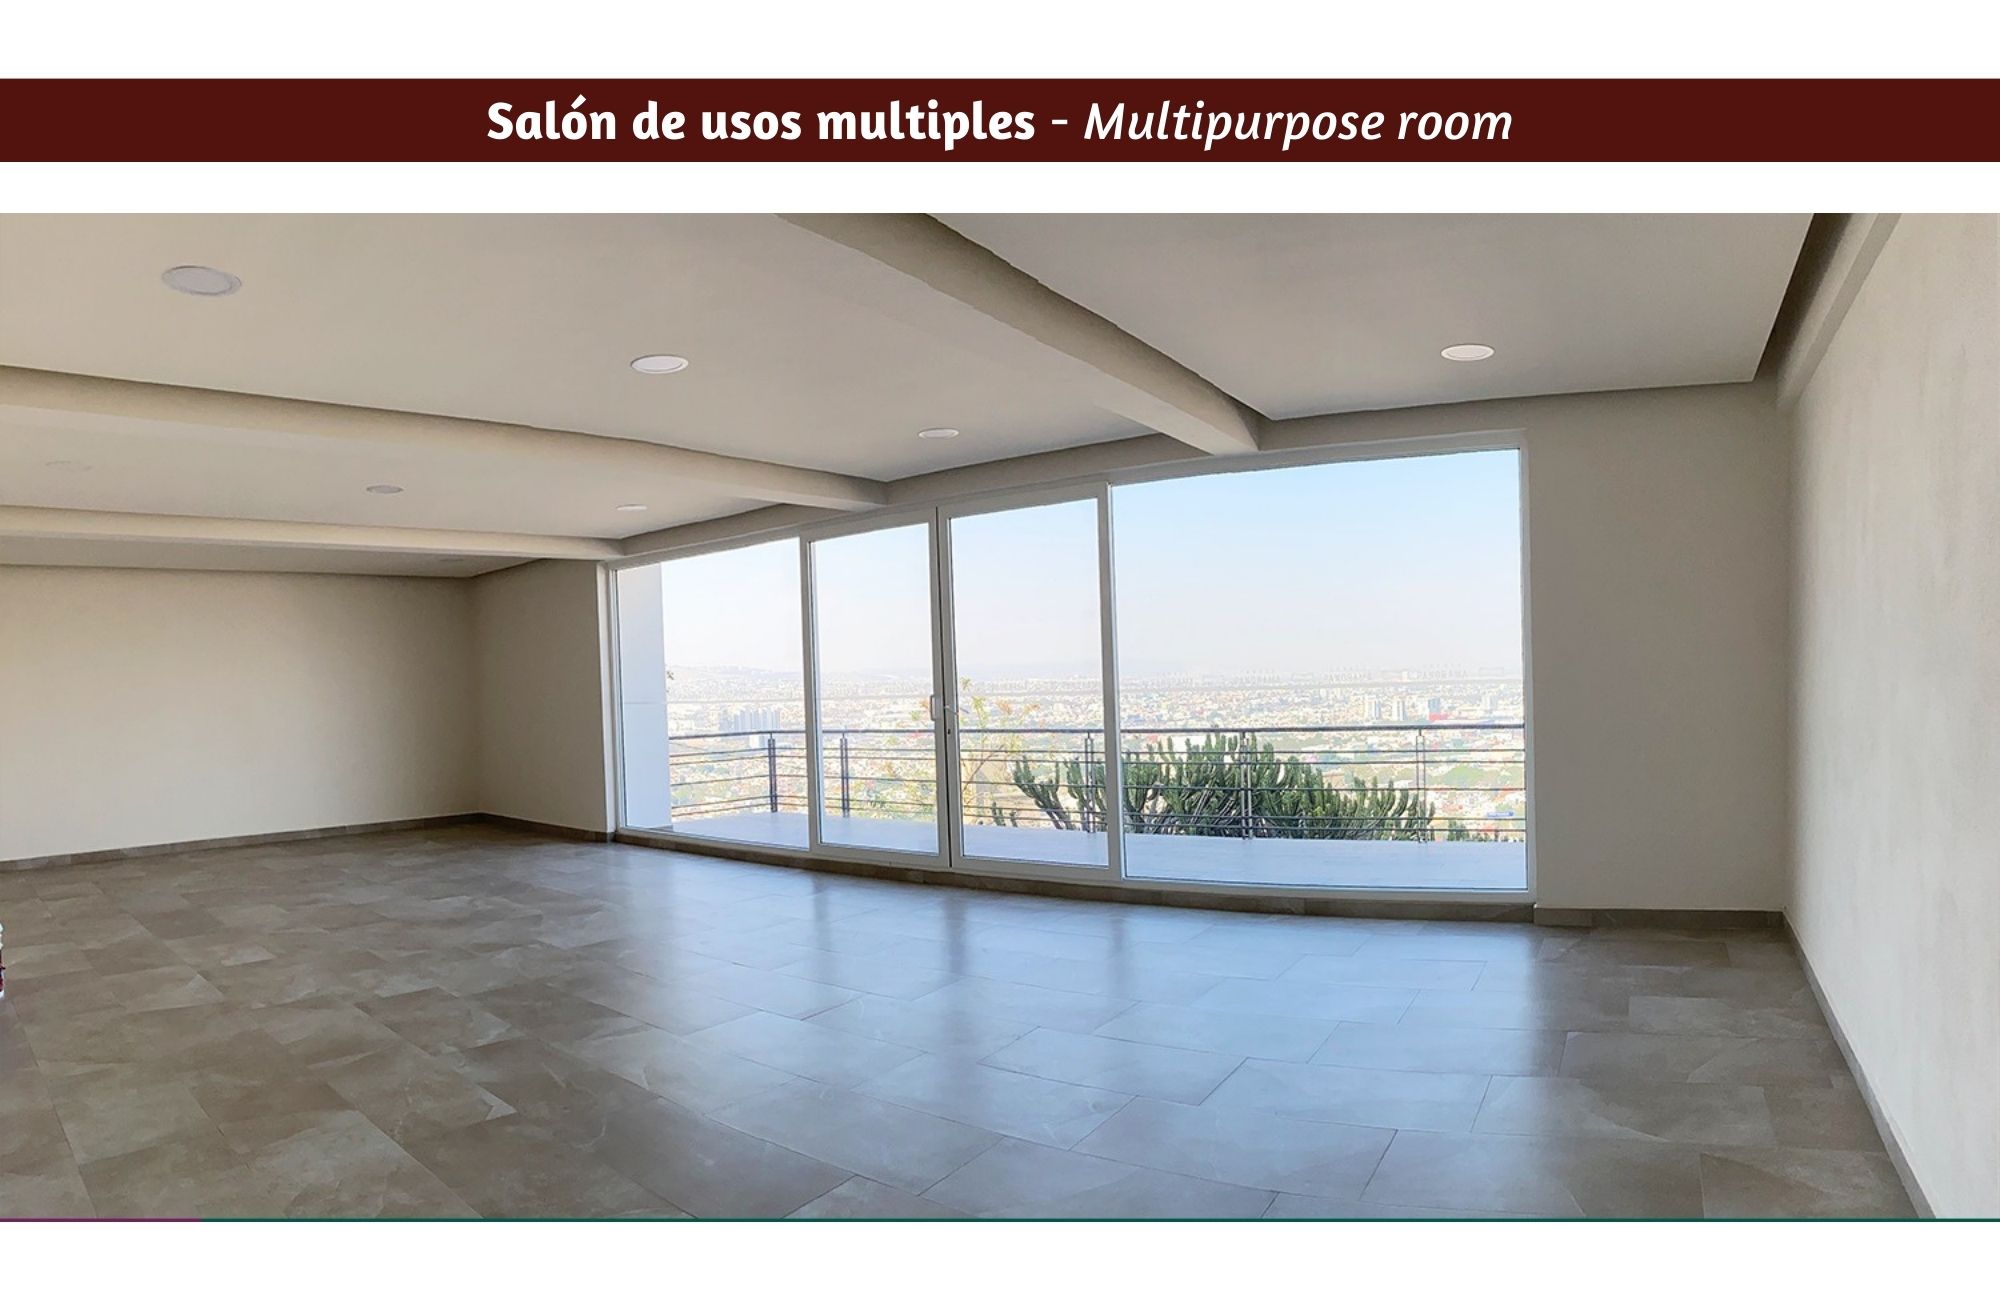 Condominium with large garden, pool, terrace, pet friendly for sale Querétaro.